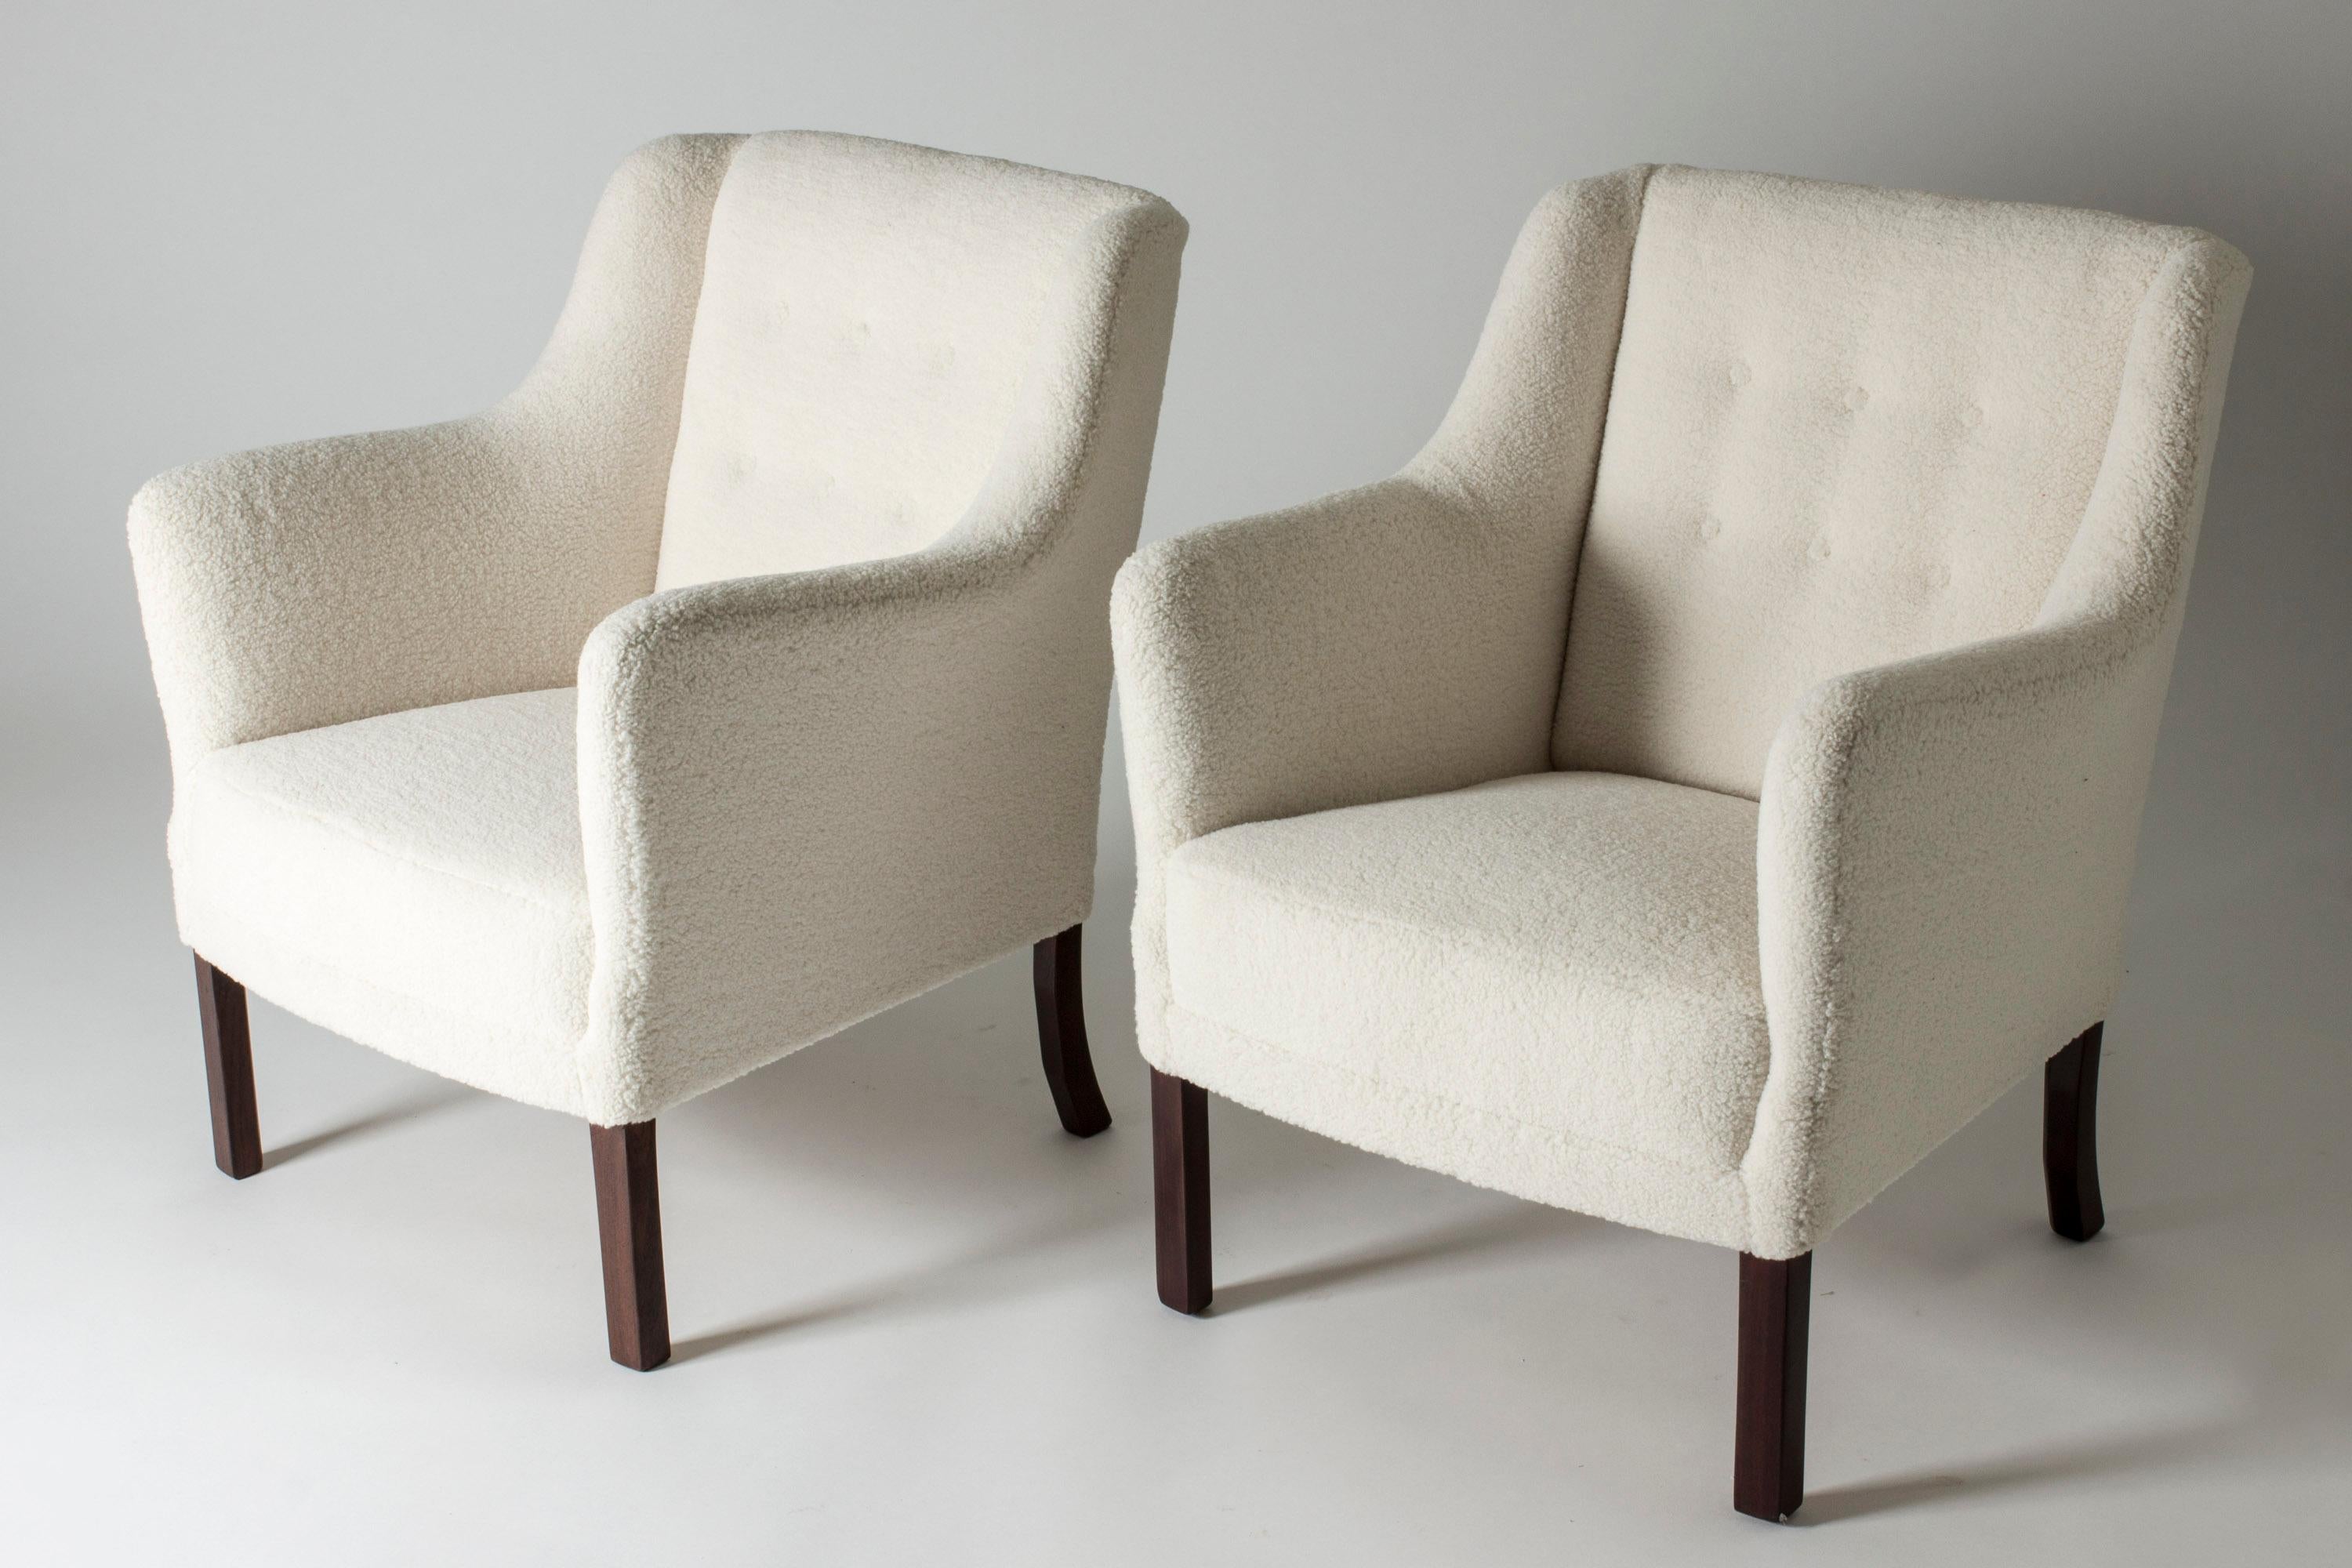 Ein Paar elegante Loungesessel von Einar Larsen. Moderner Look, gepolstert mit weißem Bouclé-Stoff. Entworfen im Jahr 1945.